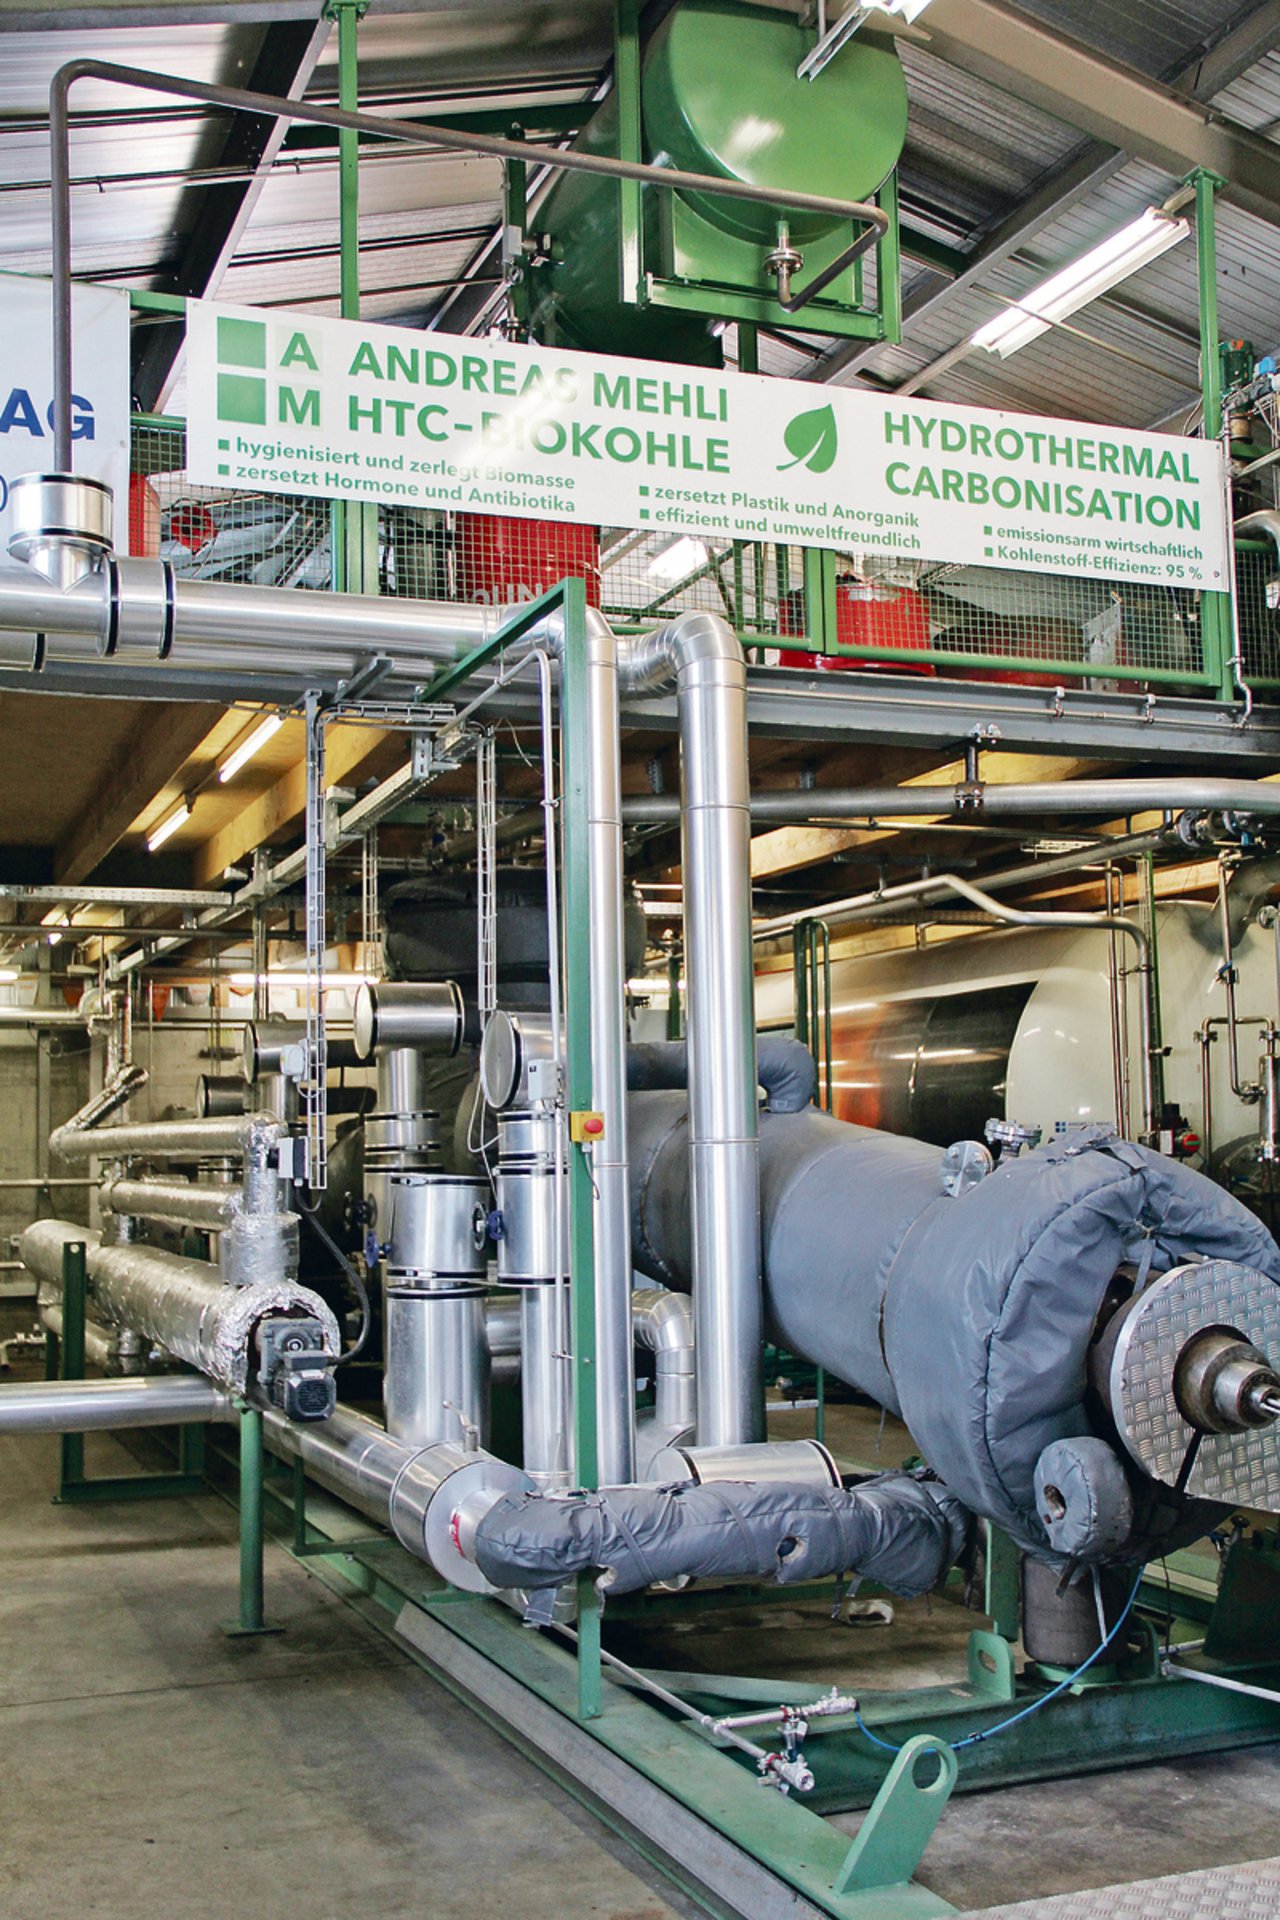 Der 2500-Liter-Reaktor für Hydrothermale Carbonisierung in den Gebäulichkeiten in Chur. (Bilder Sabine Tschudi)